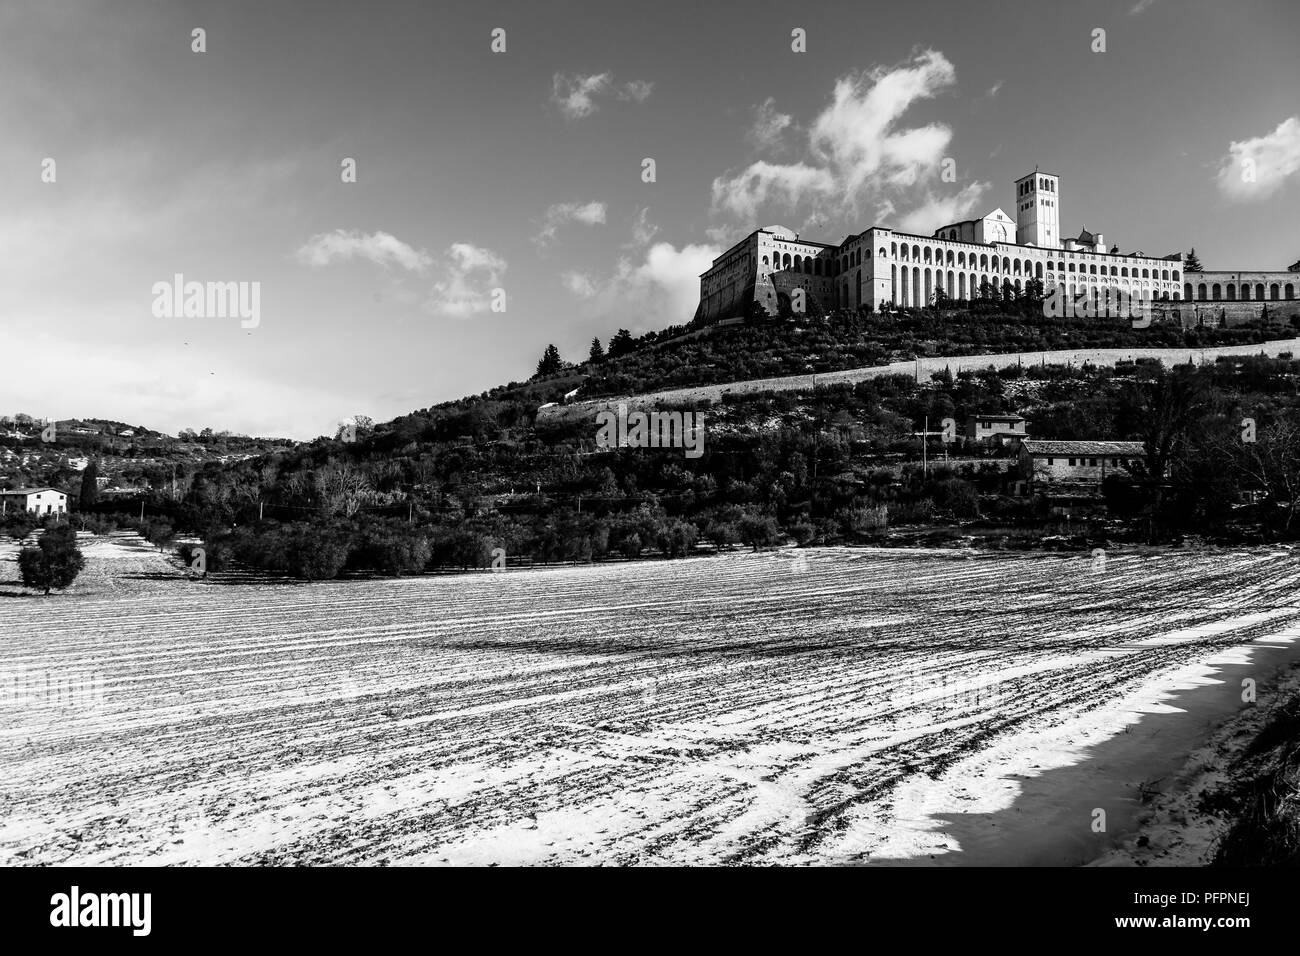 Vista della città di Assisi (Umbria) in inverno, con un campo coperto di neve e cielo con nuvole bianche Foto Stock